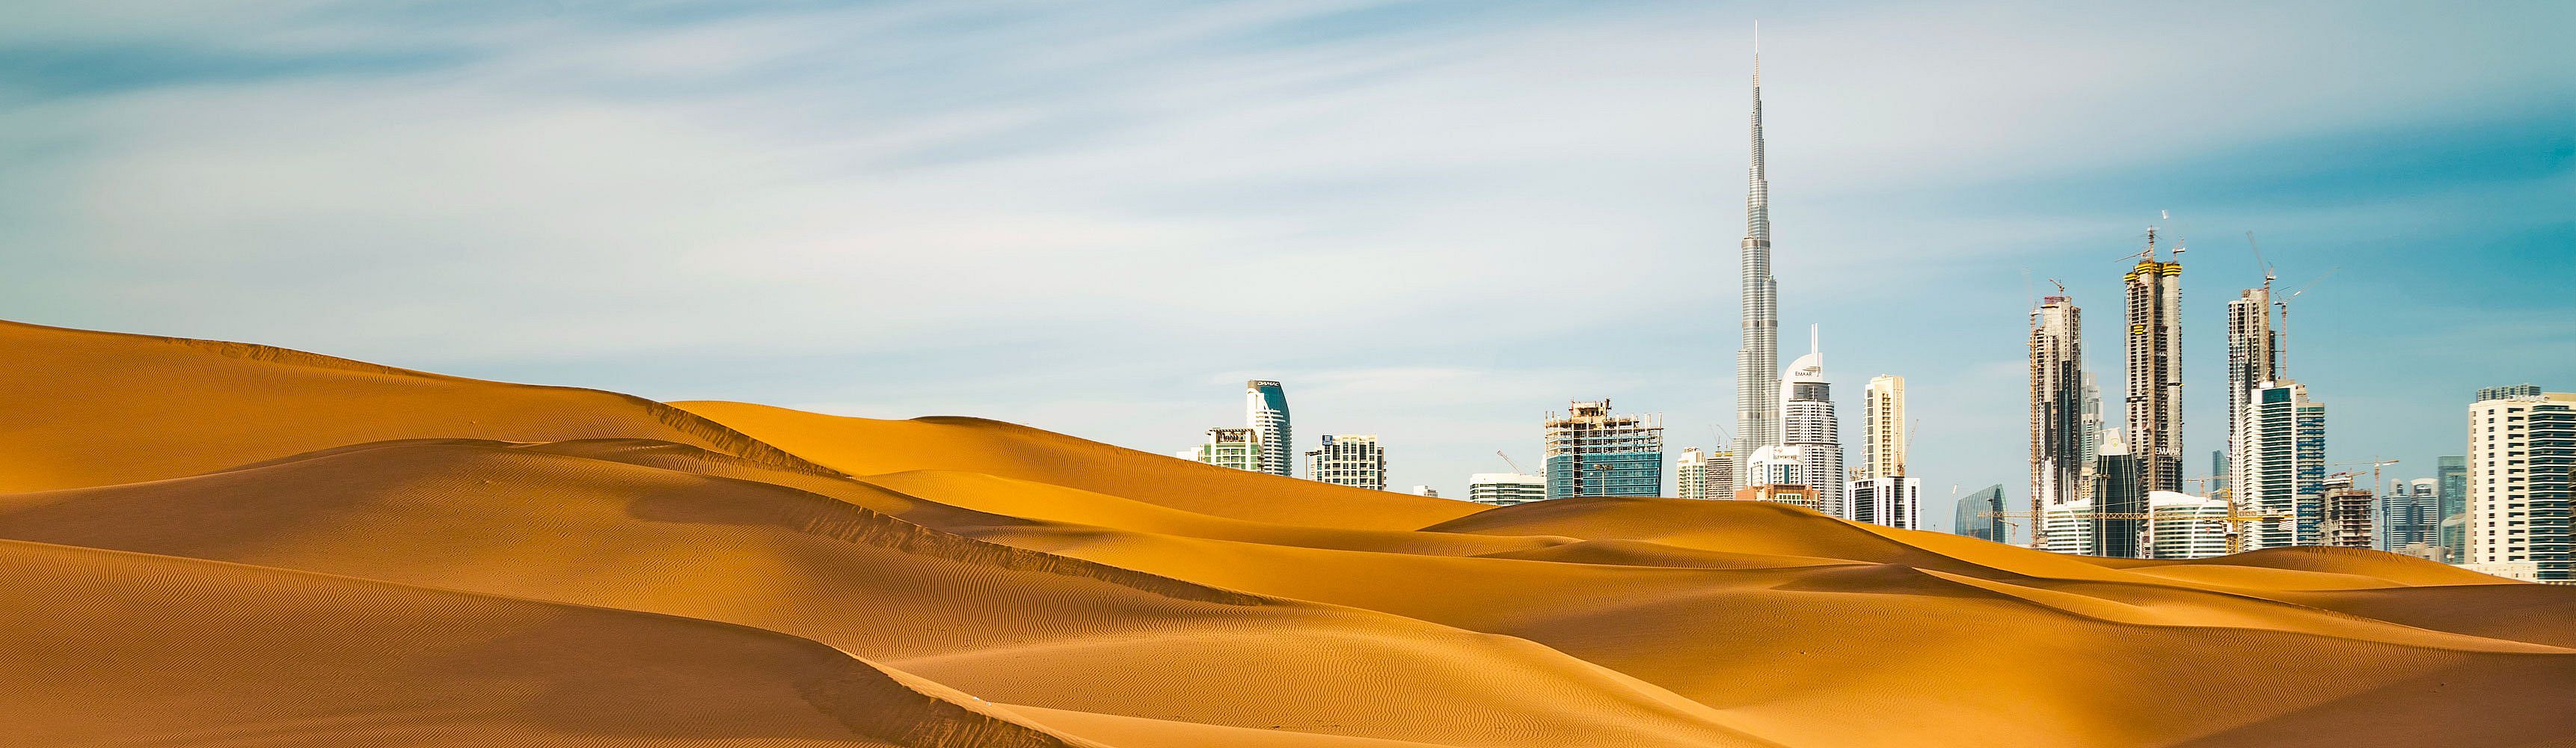 Viajes al desierto de Dubái